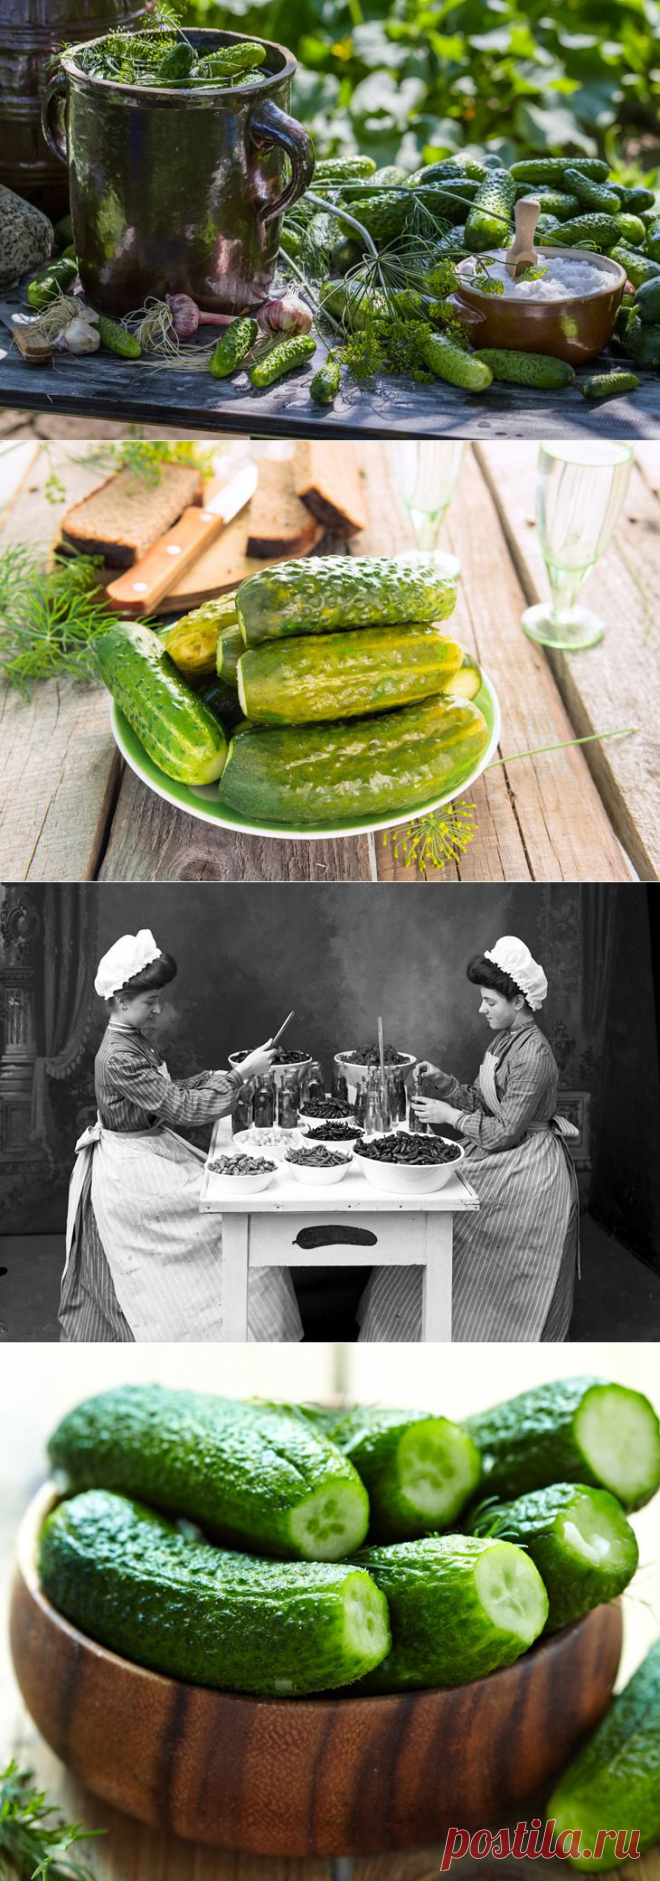 История соленого огурца и два традиционных рецепта 1909 года